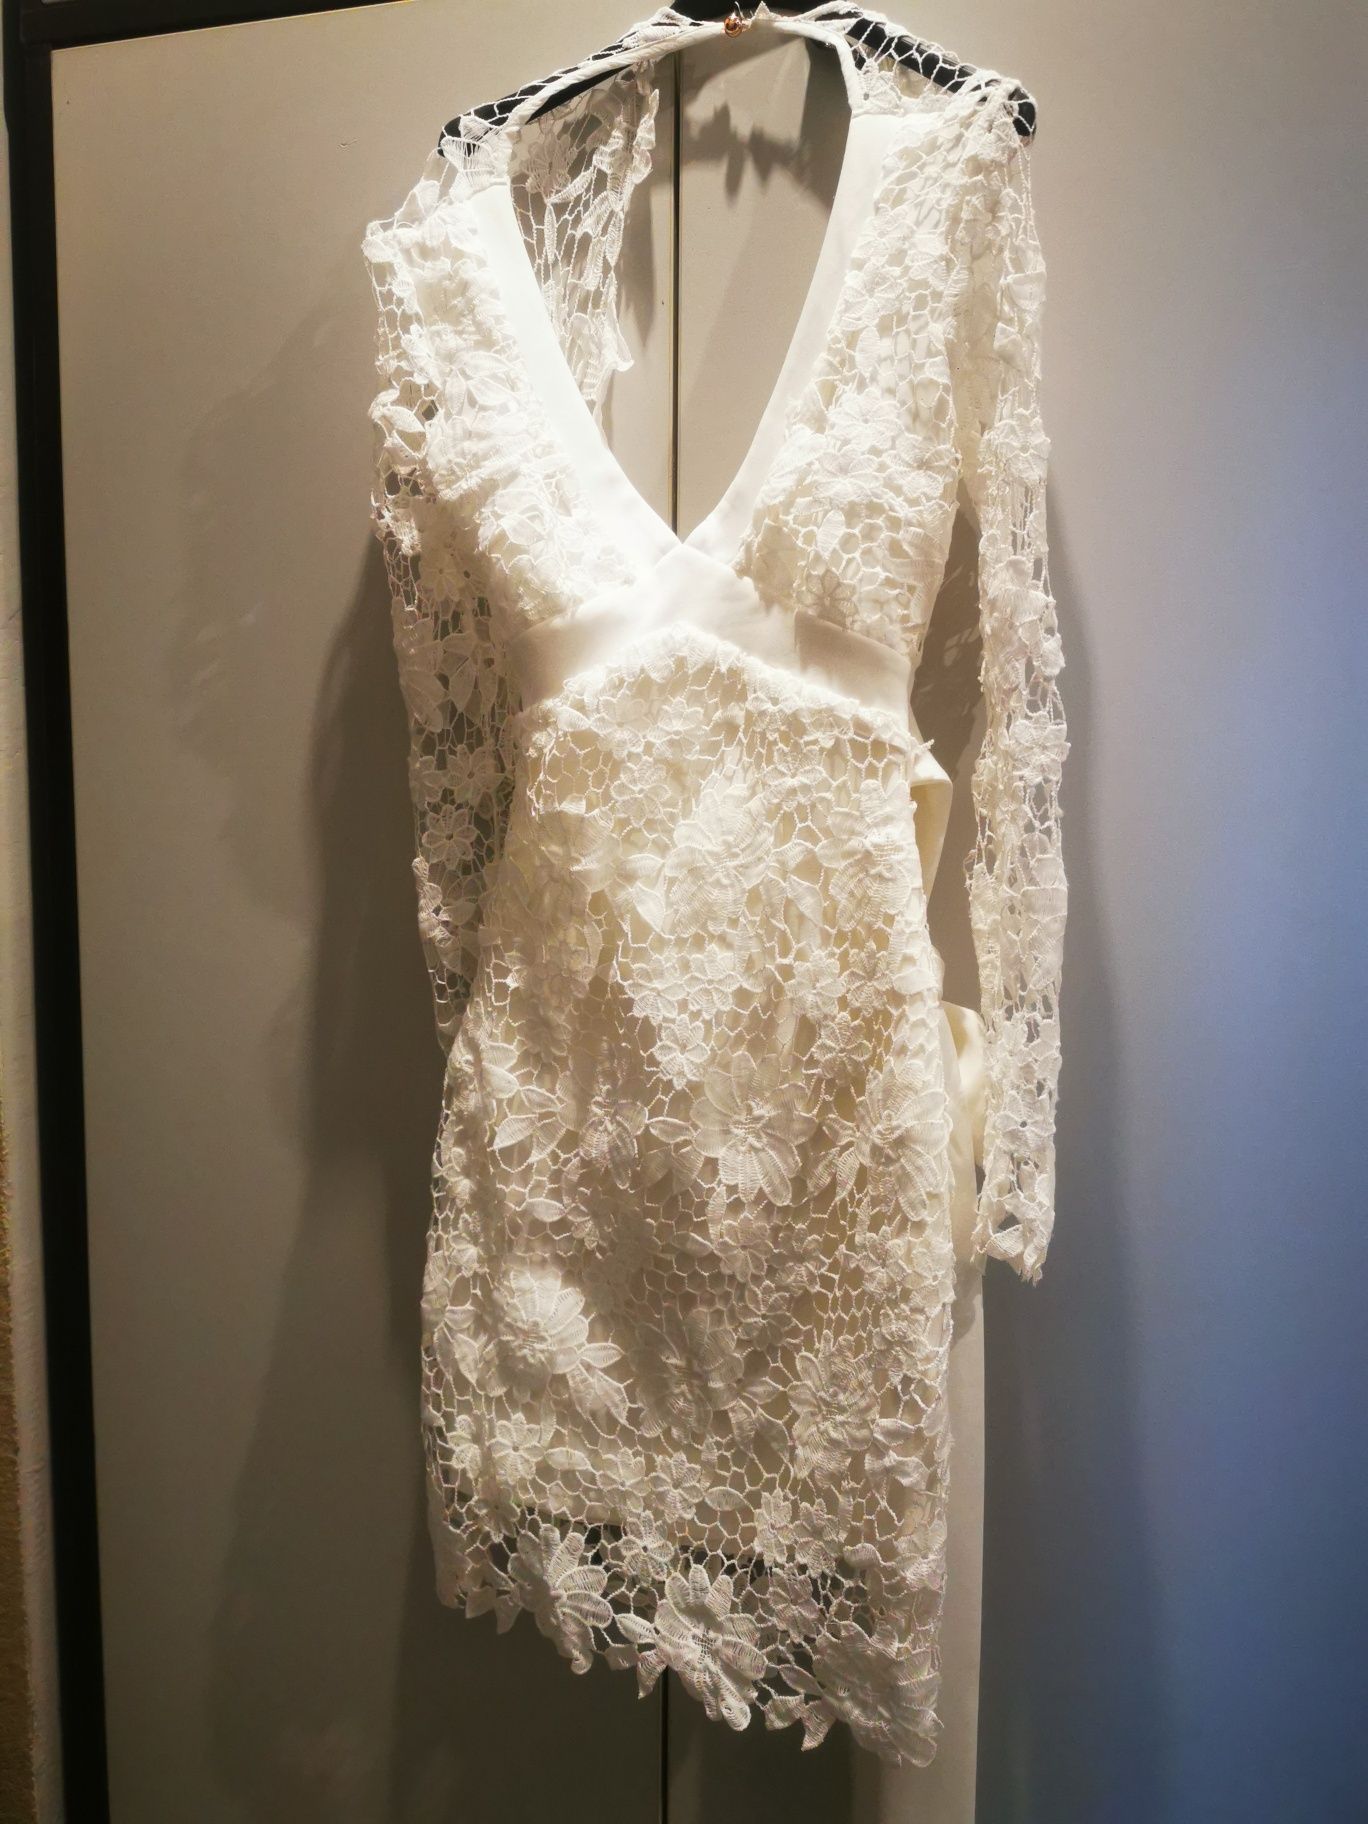 Biała sukienka koronkowa boho komunia ślub cywilny roz 34